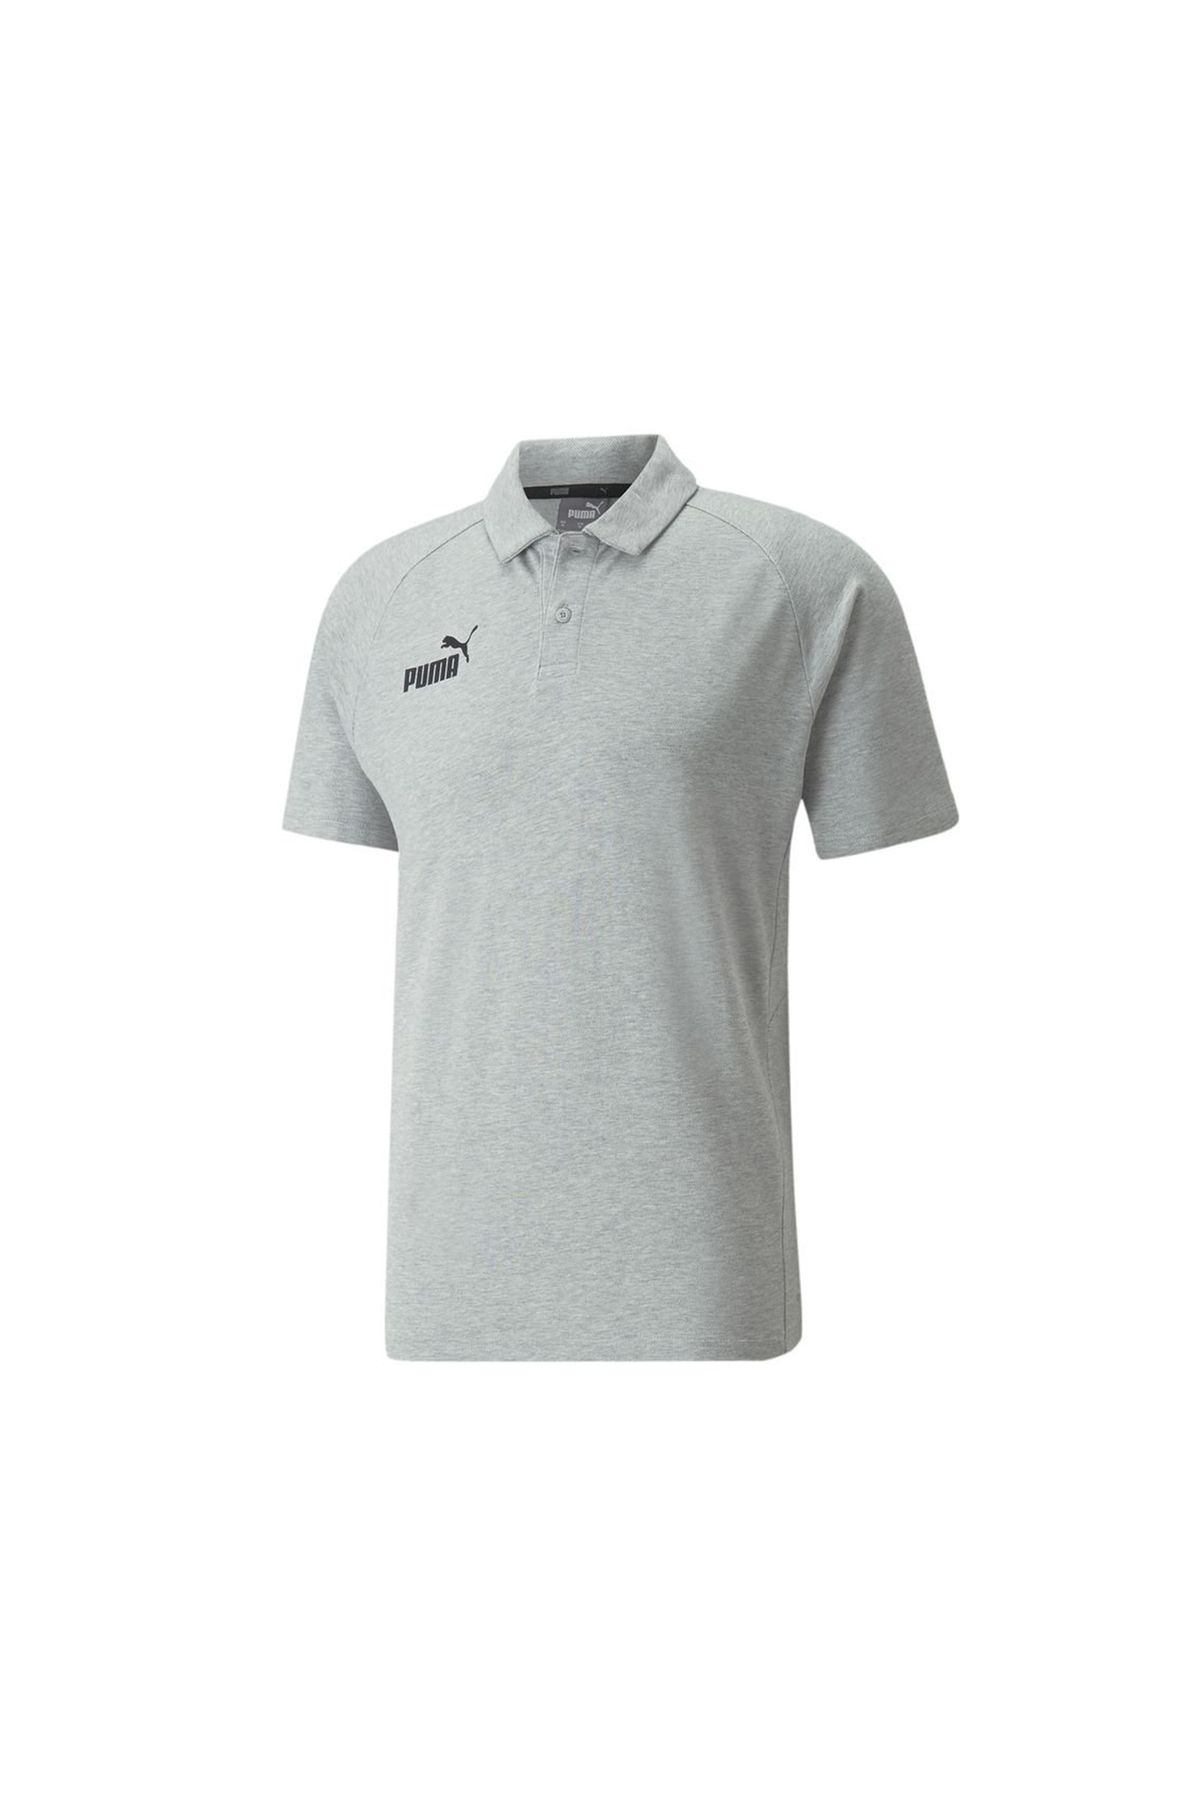 Puma Teamfinal Casuals Pamuklu Erkek Günlük Kullanıma ve Spora Uygun Polo Yakalı T-shirt